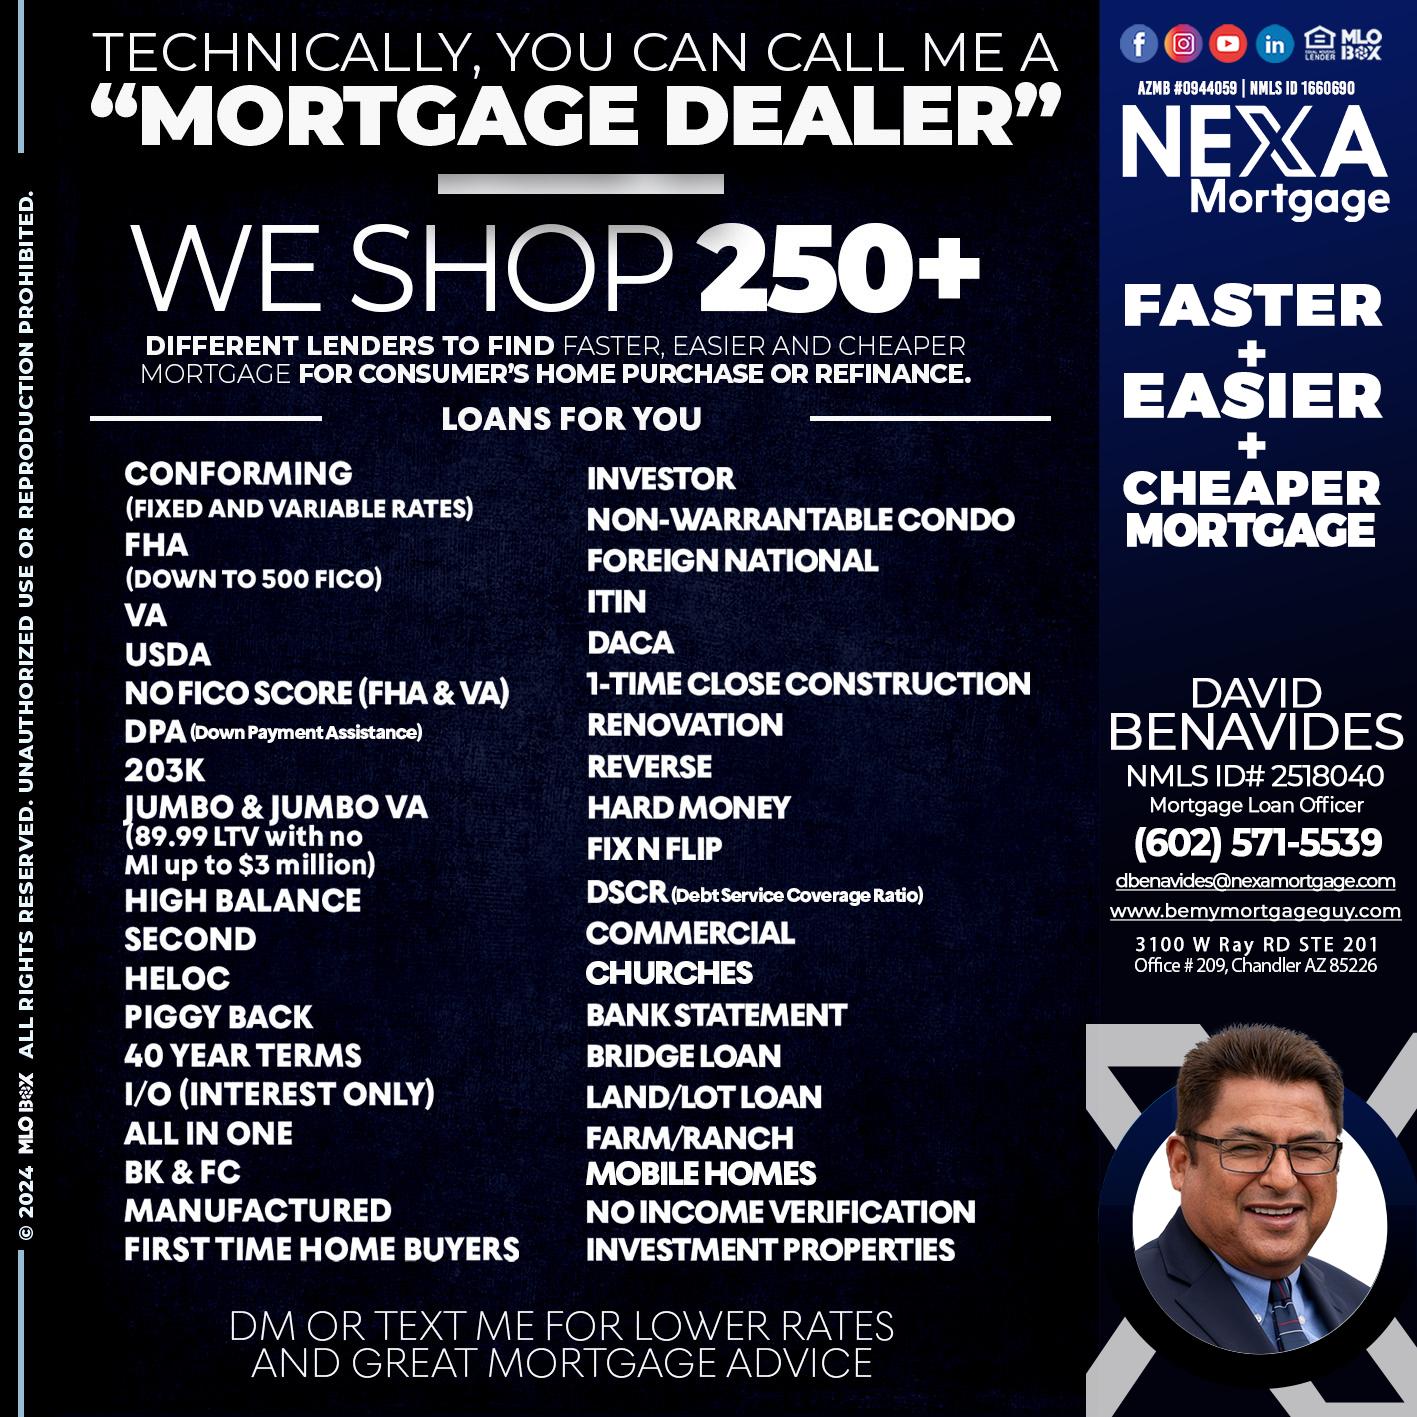 WE SHOP - David Benavides -Mortgage Loan Officer